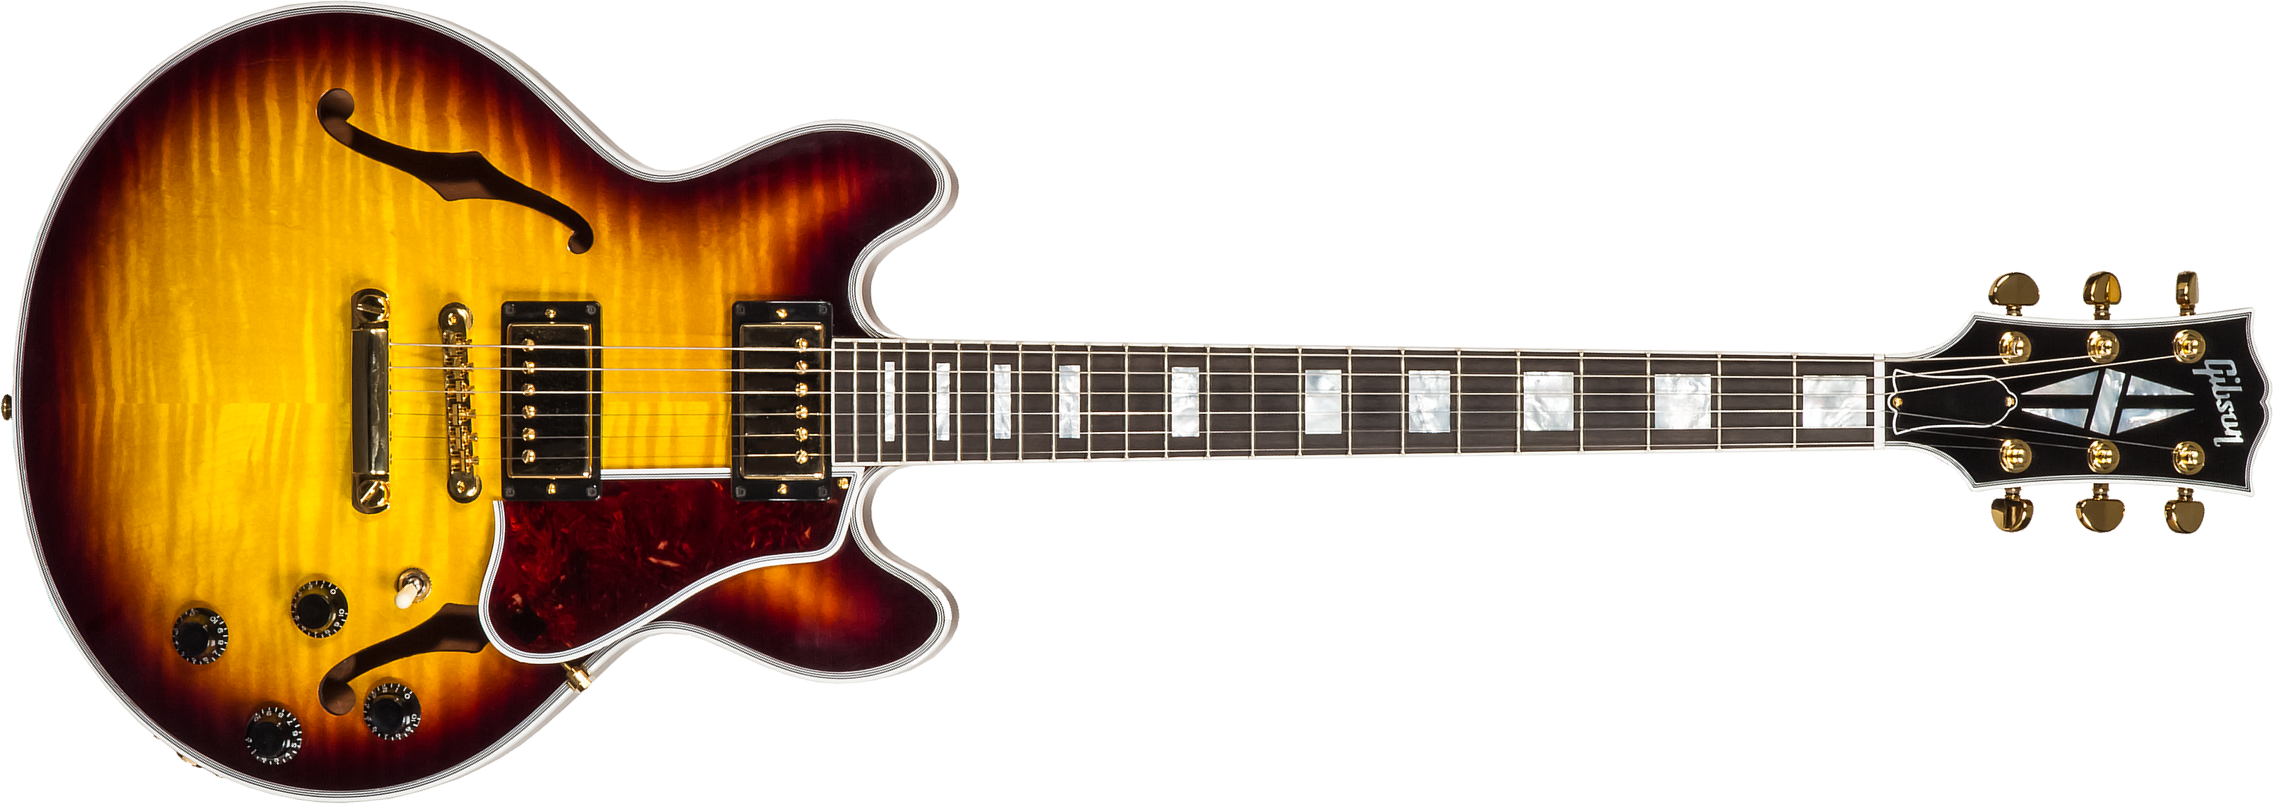 Gibson Custom Shop Cs-356 2h Ht Eb #cs201786 - Vintage Sunburst - Semi-Hollow E-Gitarre - Main picture